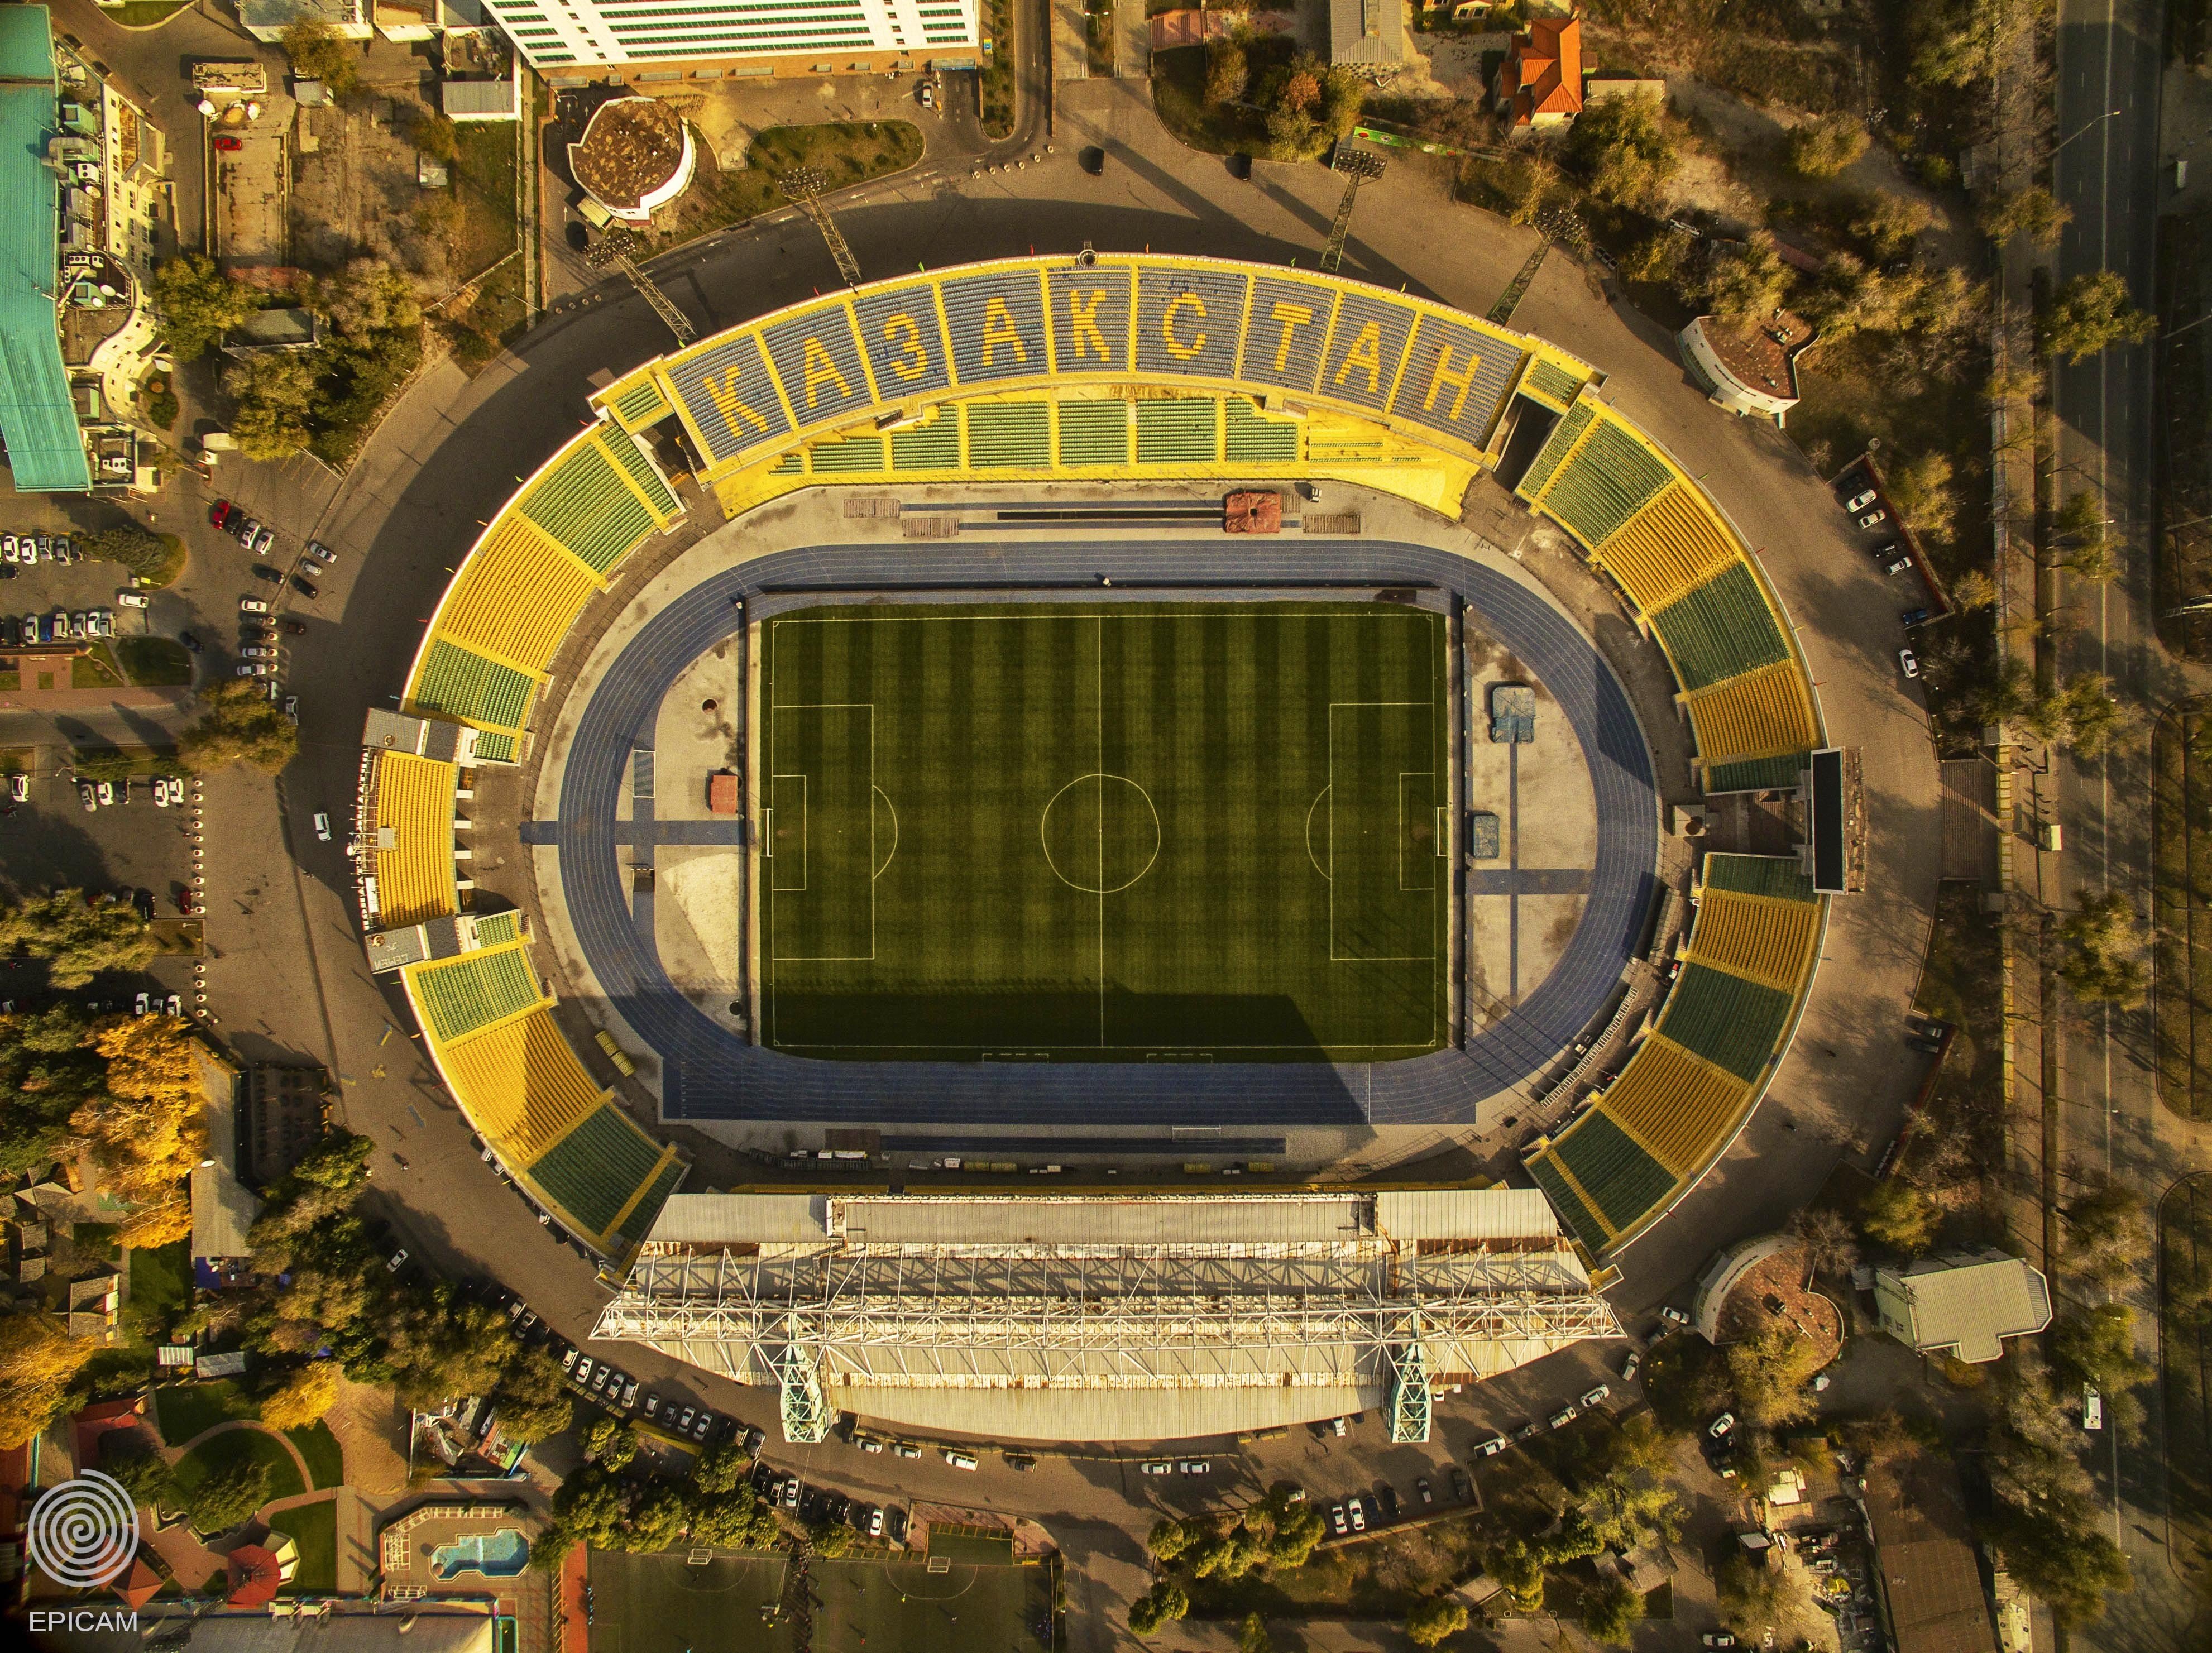 Центральный стадион Алматы